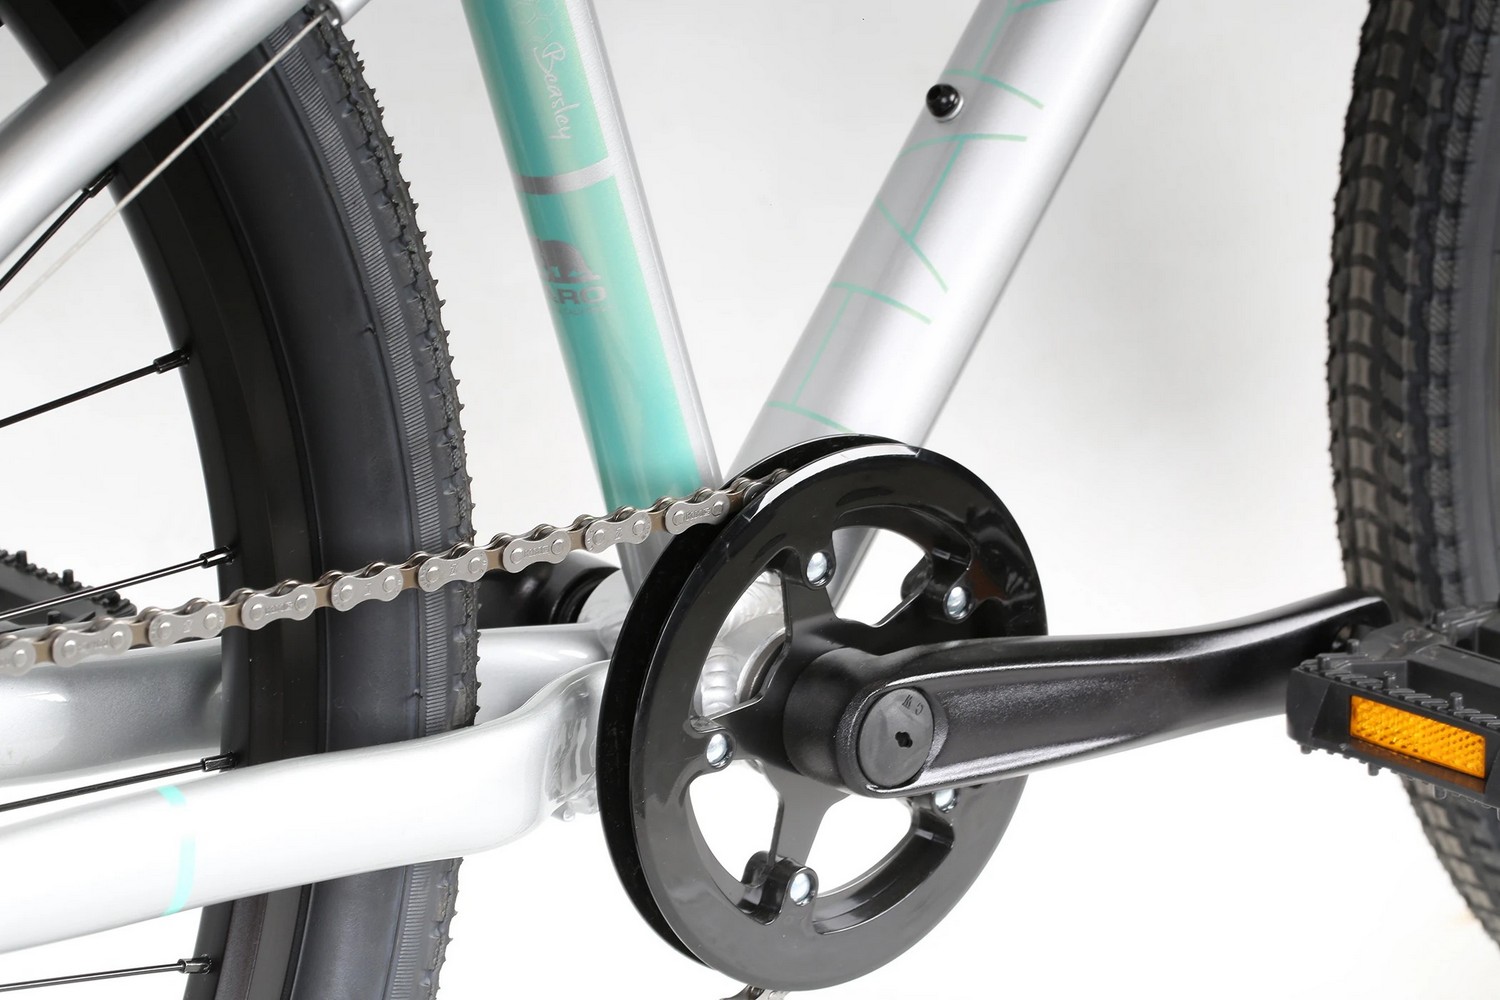 Подростковый велосипед Haro Beasley 26, год 2021, цвет Серебристый-Зеленый, ростовка 13